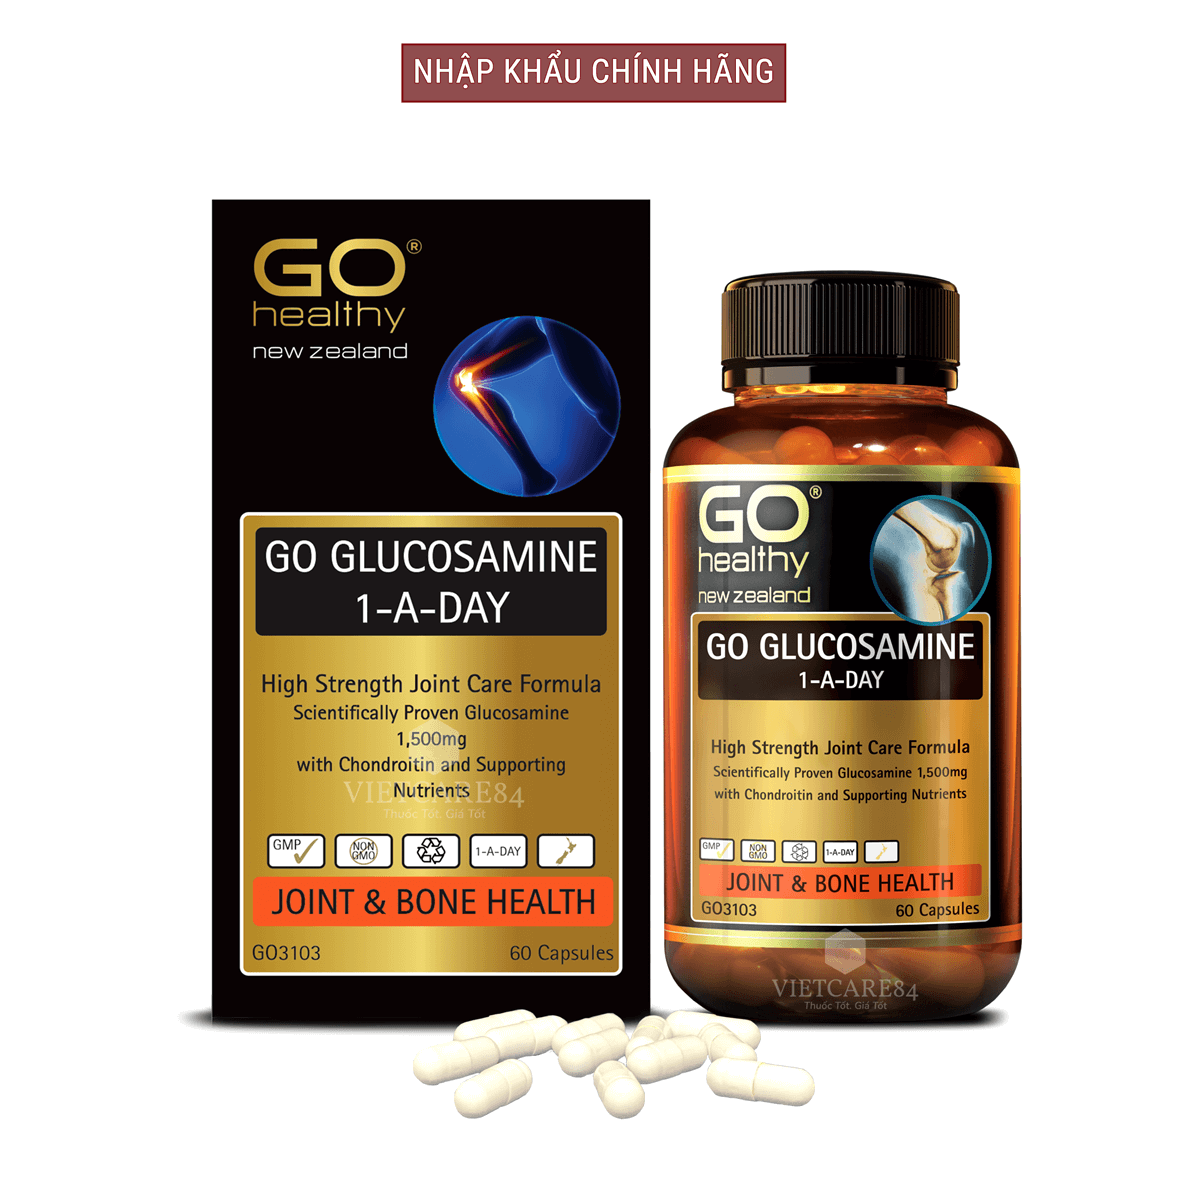 Bộ sản phẩm 2 hộp viên uống glucosamine nhập khẩu chính hãng New Zealand GO GLUCOSAMINE 1-A-DAY 1500mg (30 viên và 60 viên) giúp tăng dịch khớp, giảm thoái hóa khớp, khô khớp, cứng khớp;nuôi dưỡng xương sụn khớp khỏe mạnh